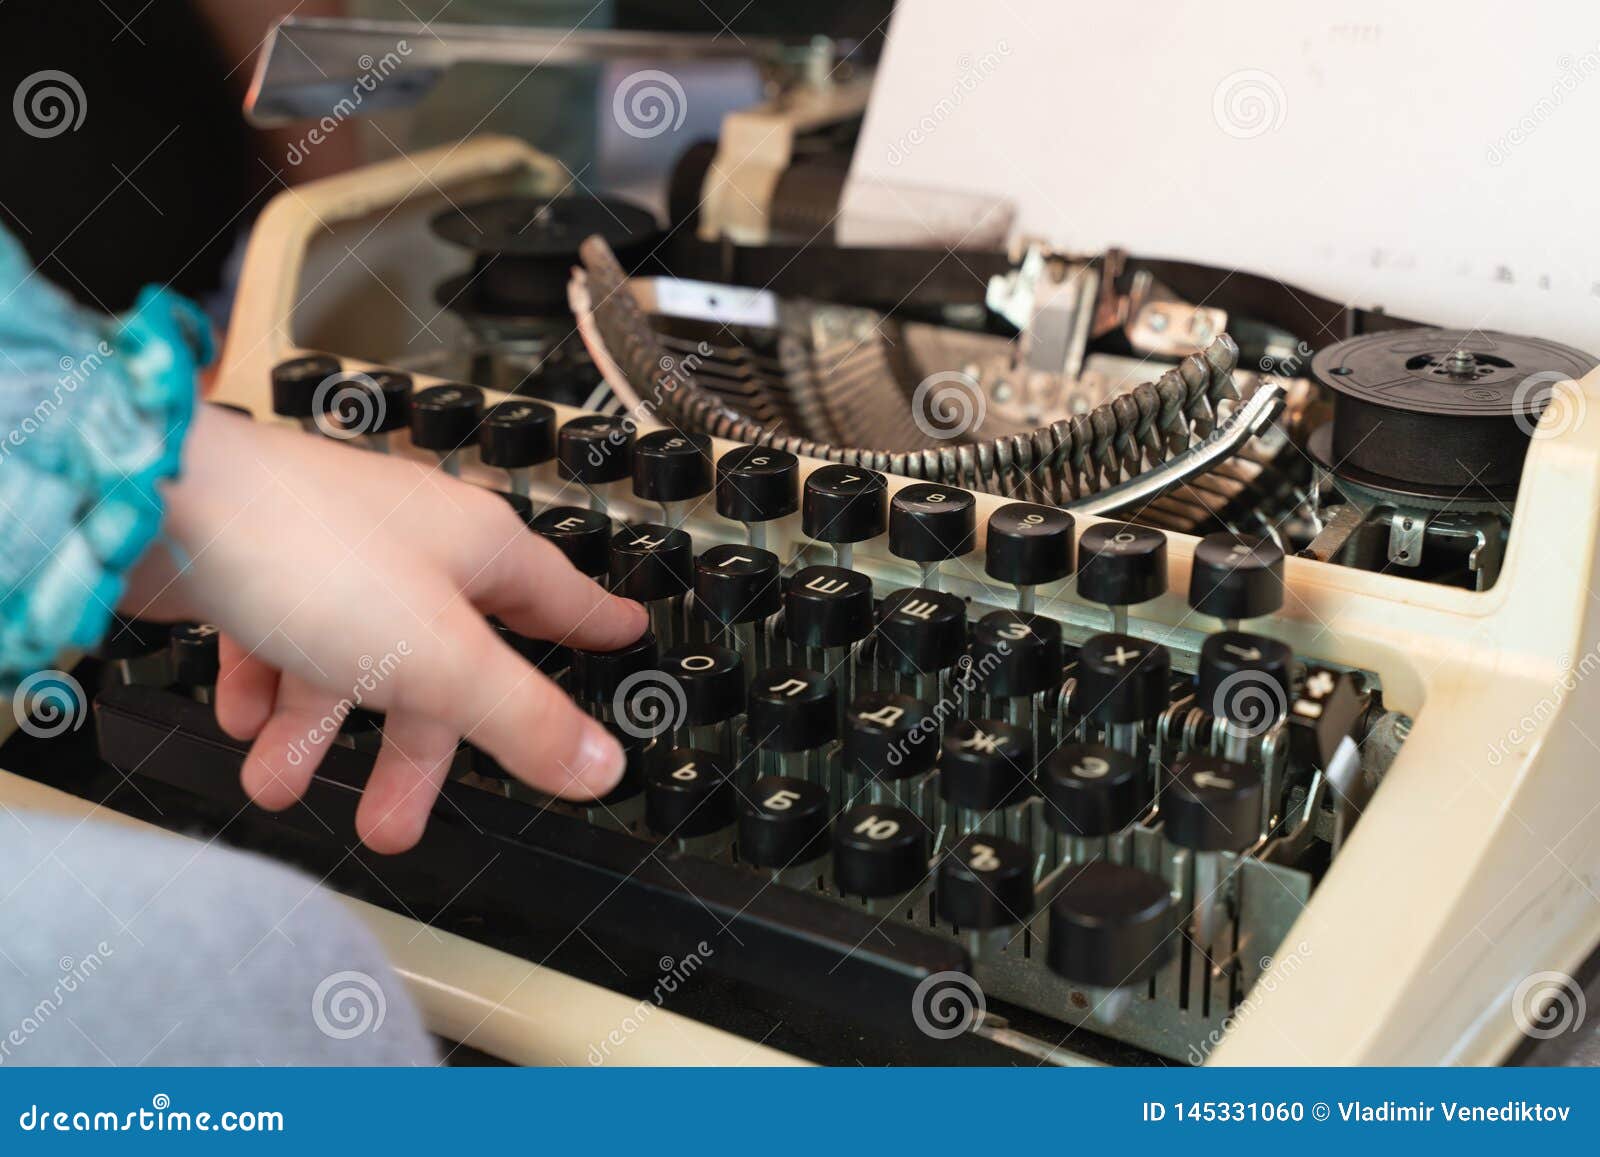 old style typewriter keyboard